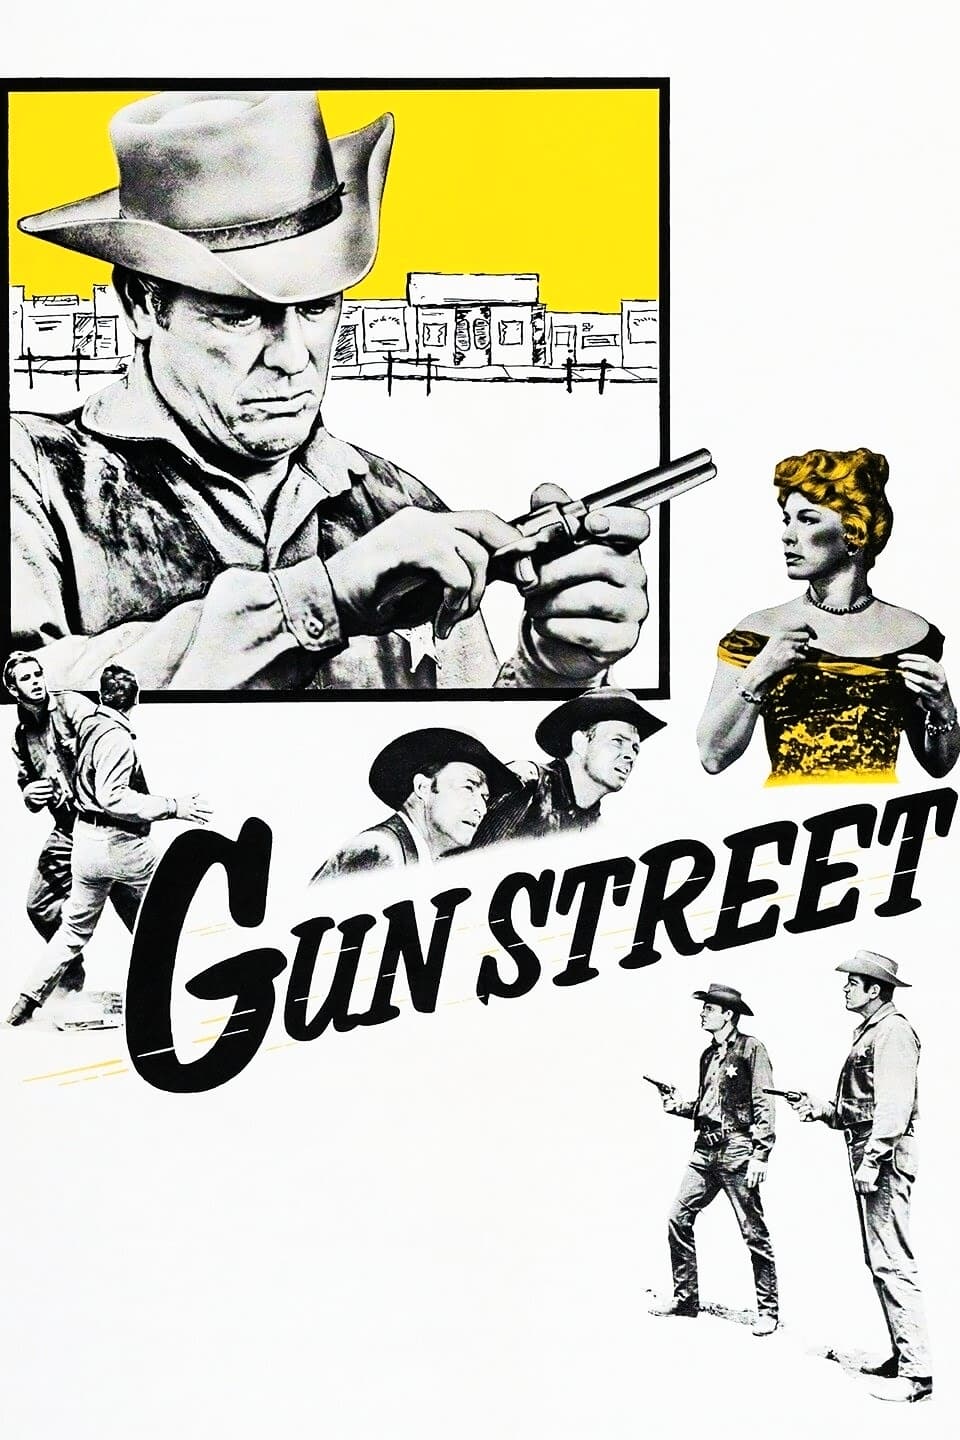 Gun Street (1961)